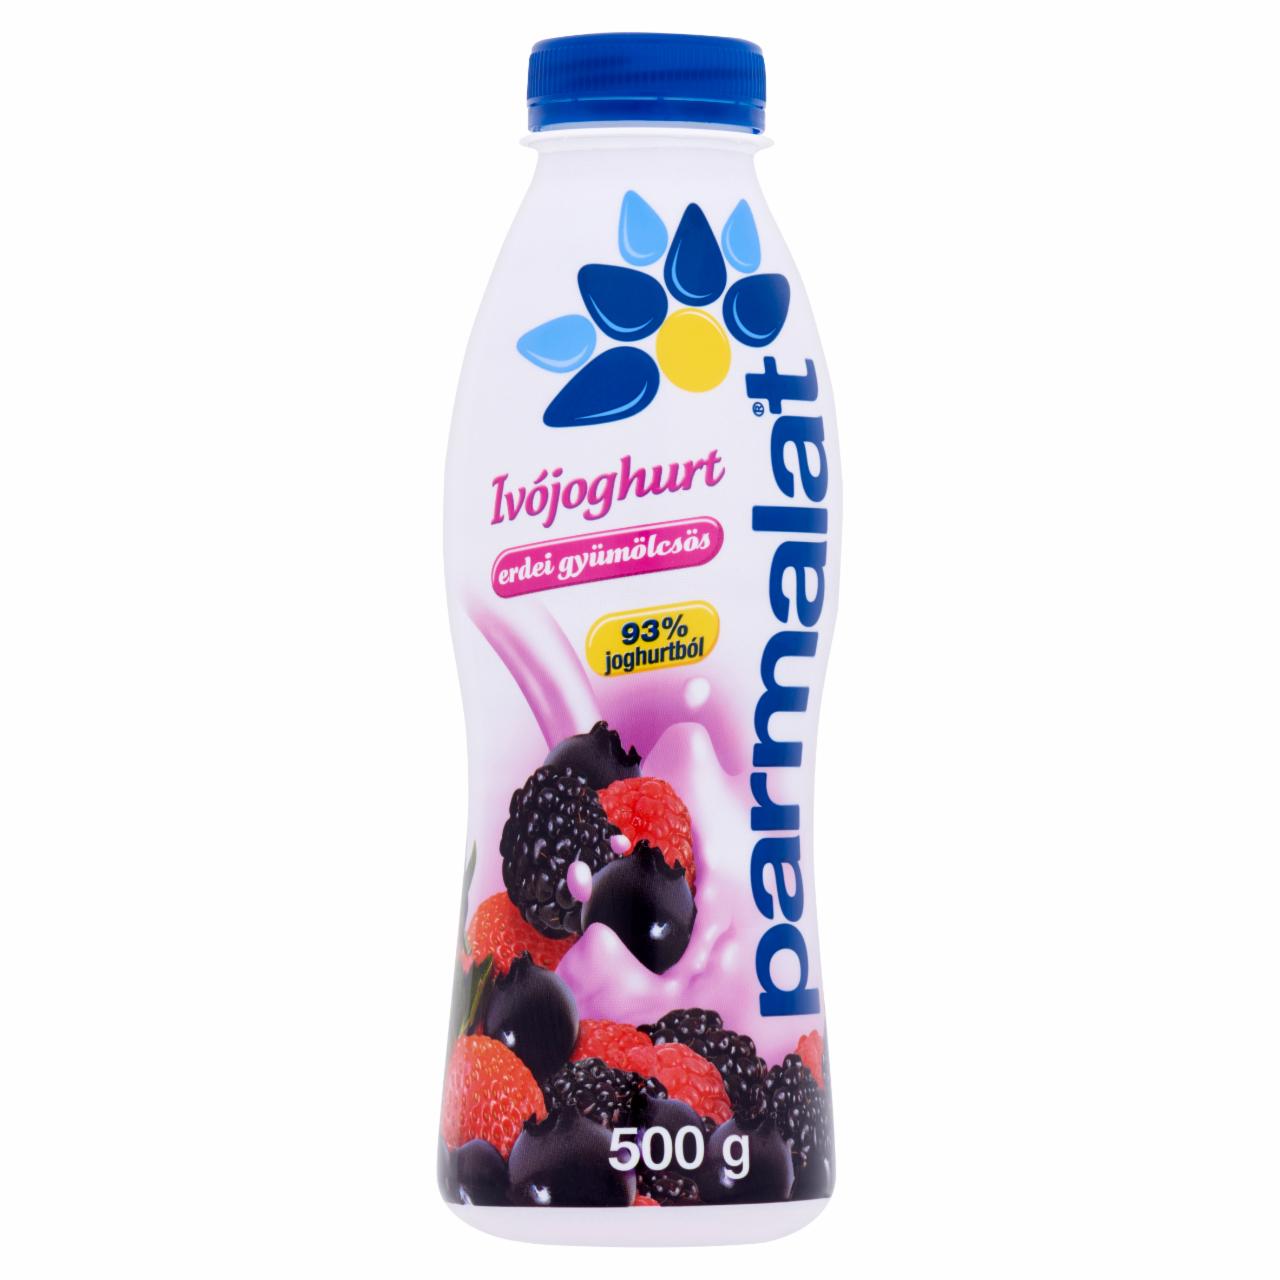 Képek - Parmalat erdei gyümölcsös ivójoghurt 500 g